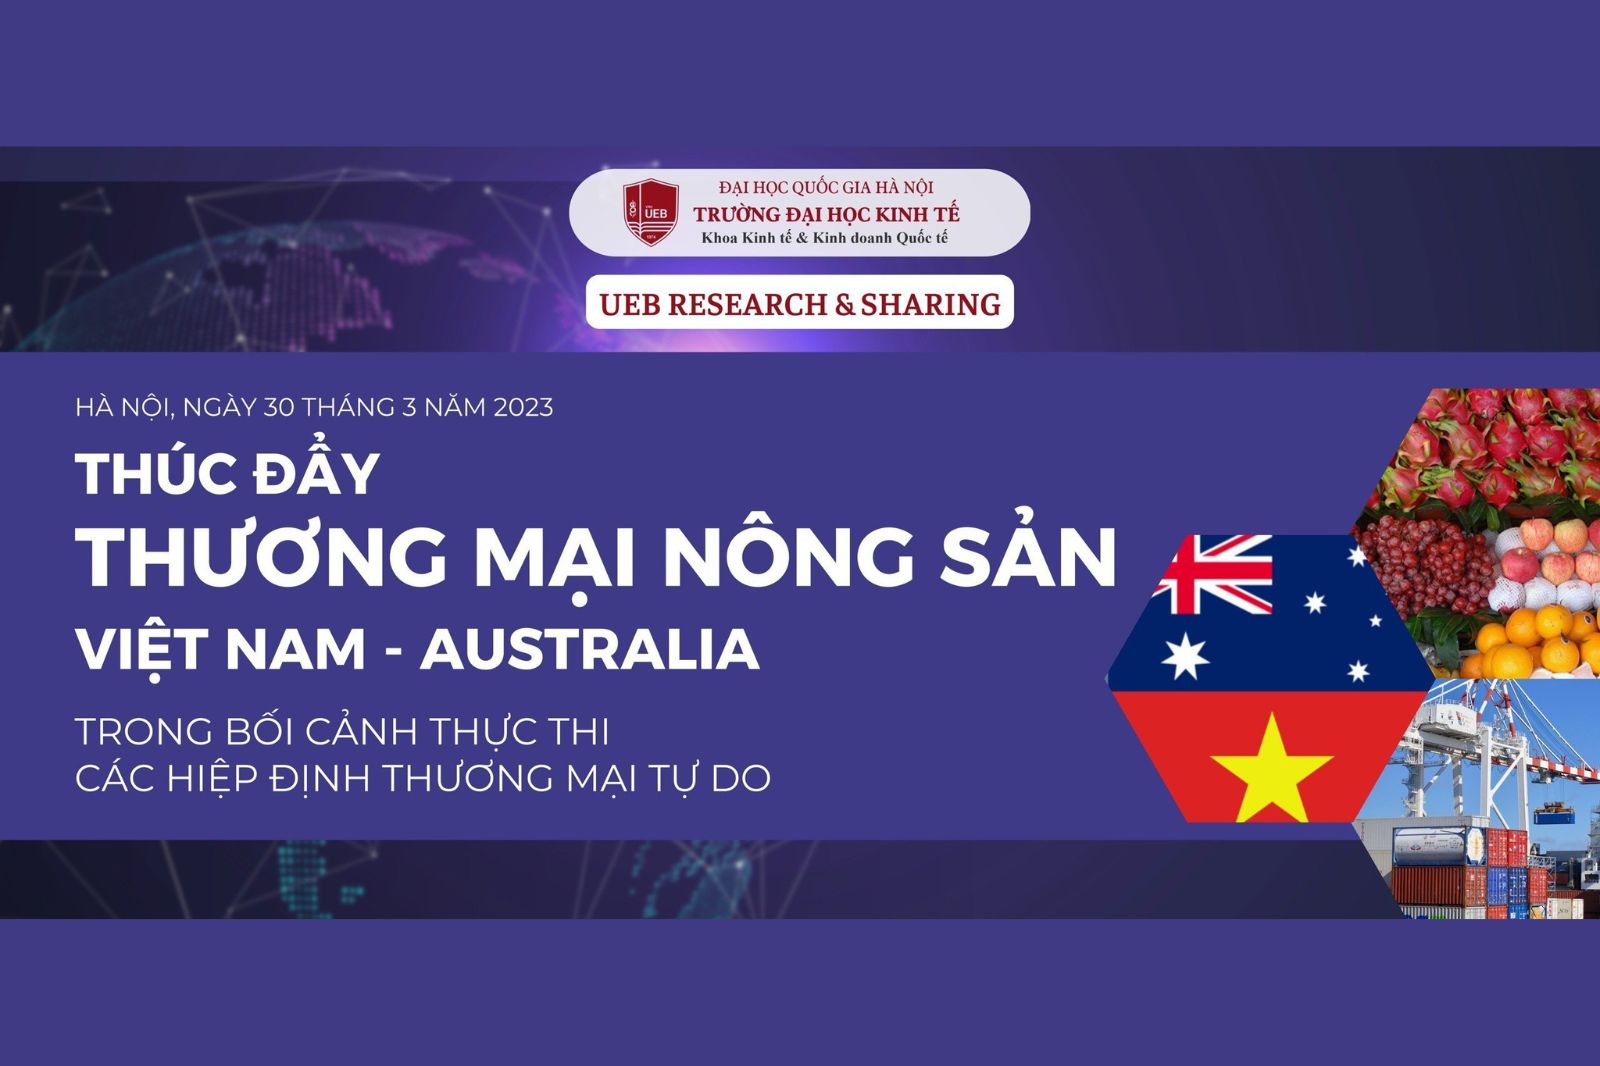 Tham gia hội thảo khoa học “Thúc đẩy thương mại nông sản Việt Nam - Australia trong bối cảnh thực thi các Hiệp định thương mại tự do”